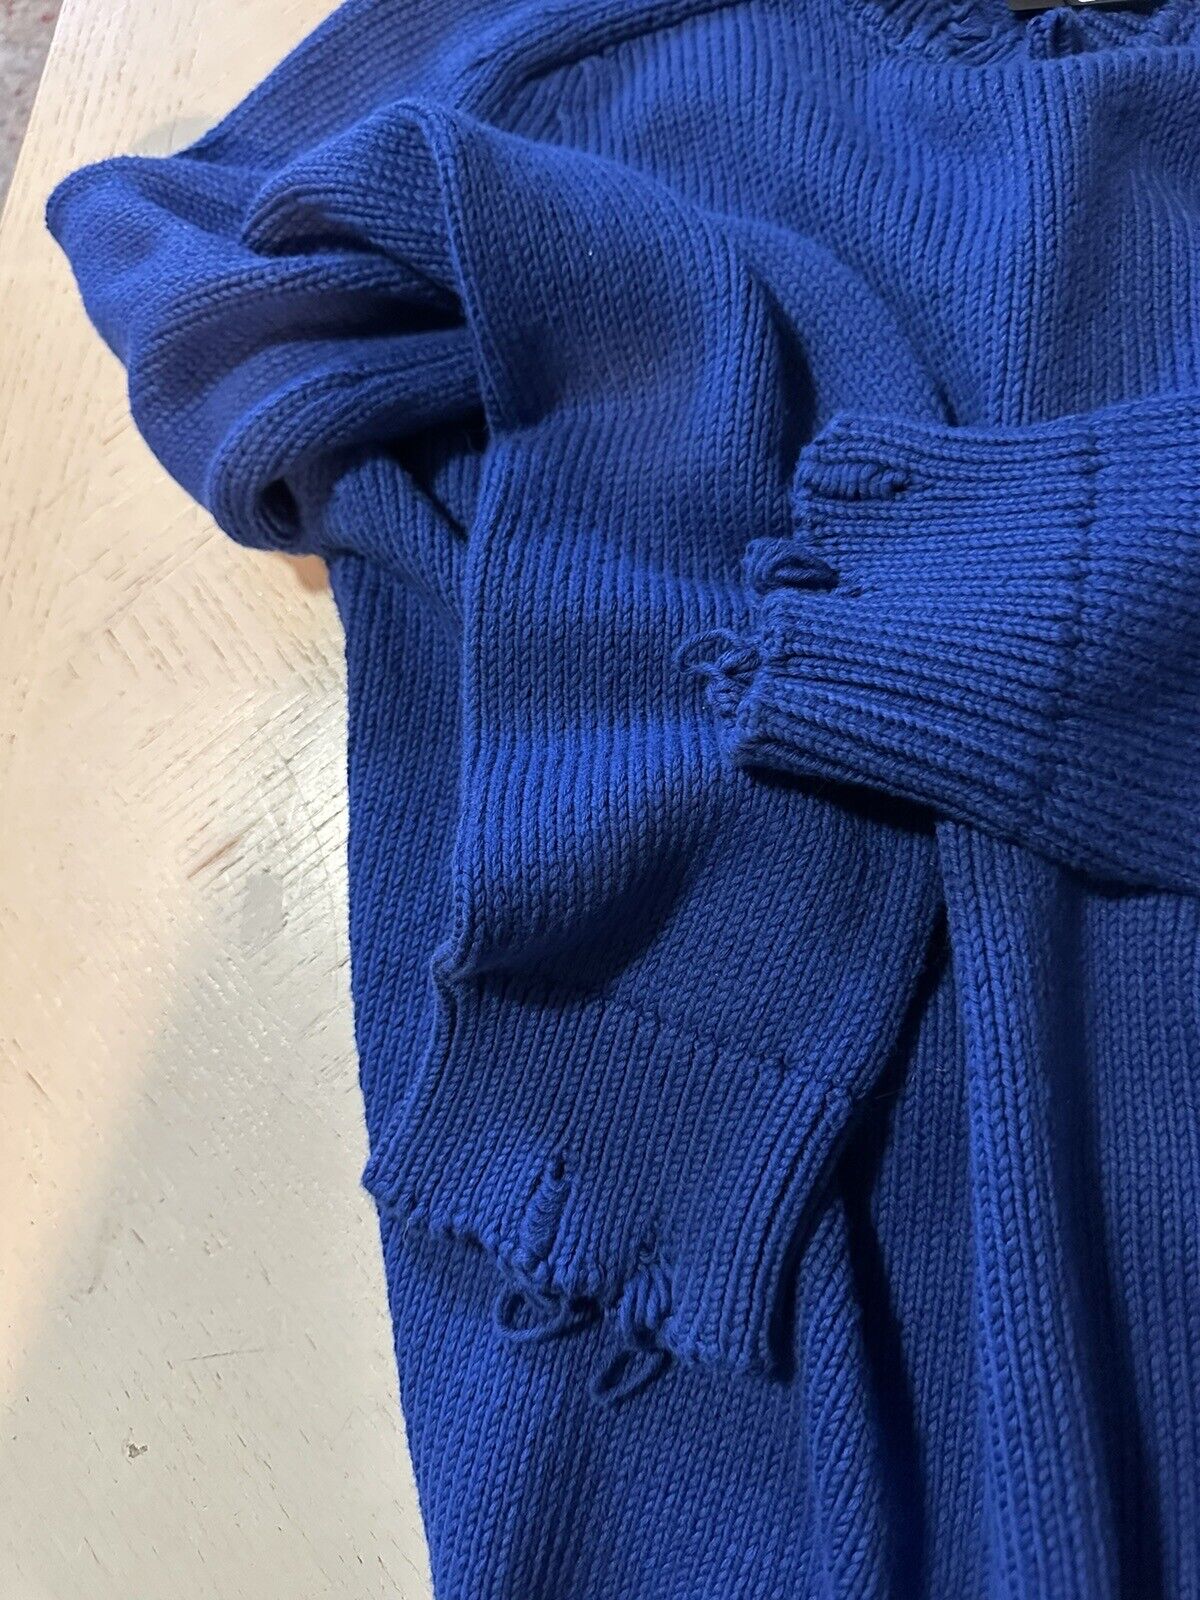 NWT $890 Saint Laurent Men’s Crewneck Sweater Blue Size L Italy